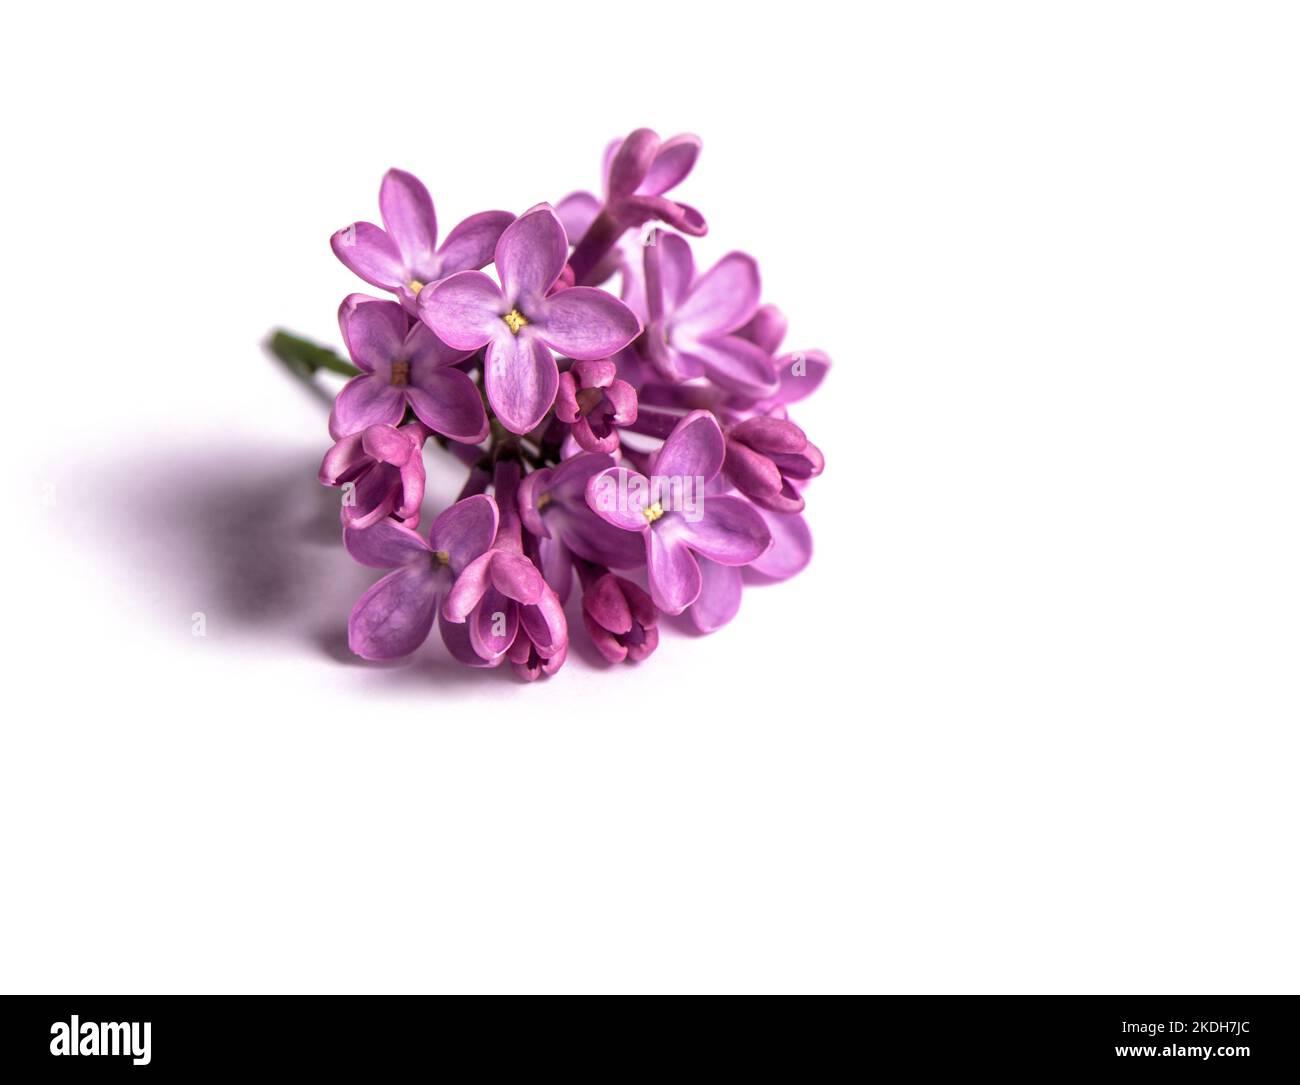 Branche de fleurs de lilas violet sur fond blanc Banque D'Images